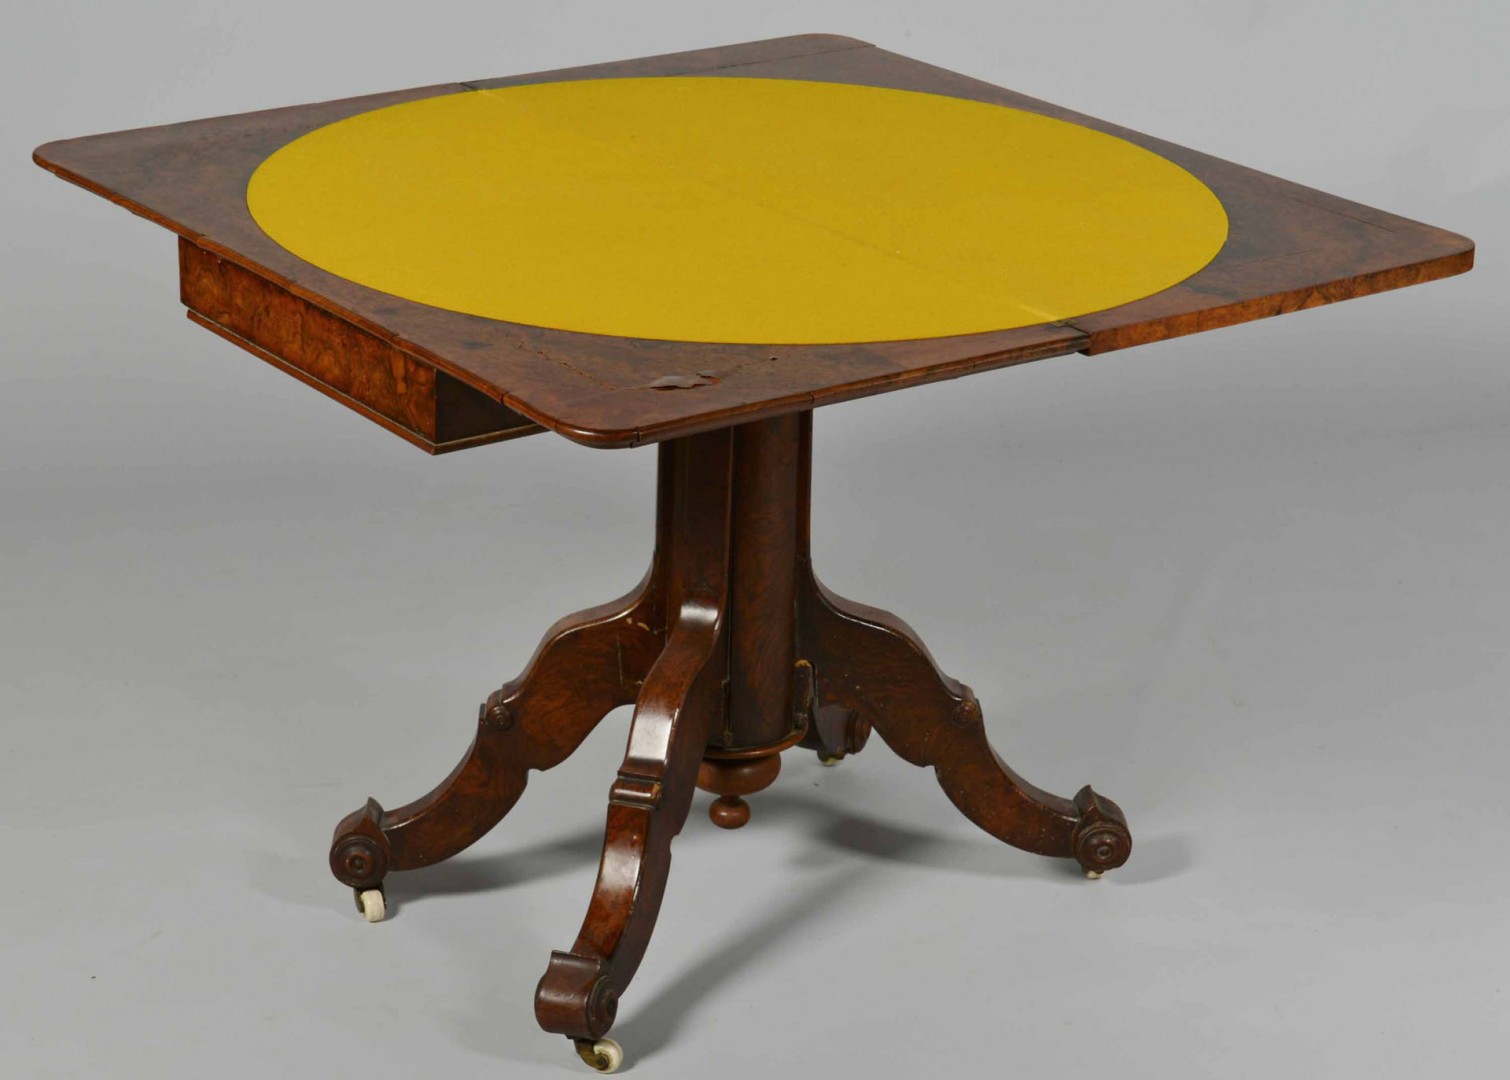 Lot 349: Burl Wood Card Table, Renaissance Revival